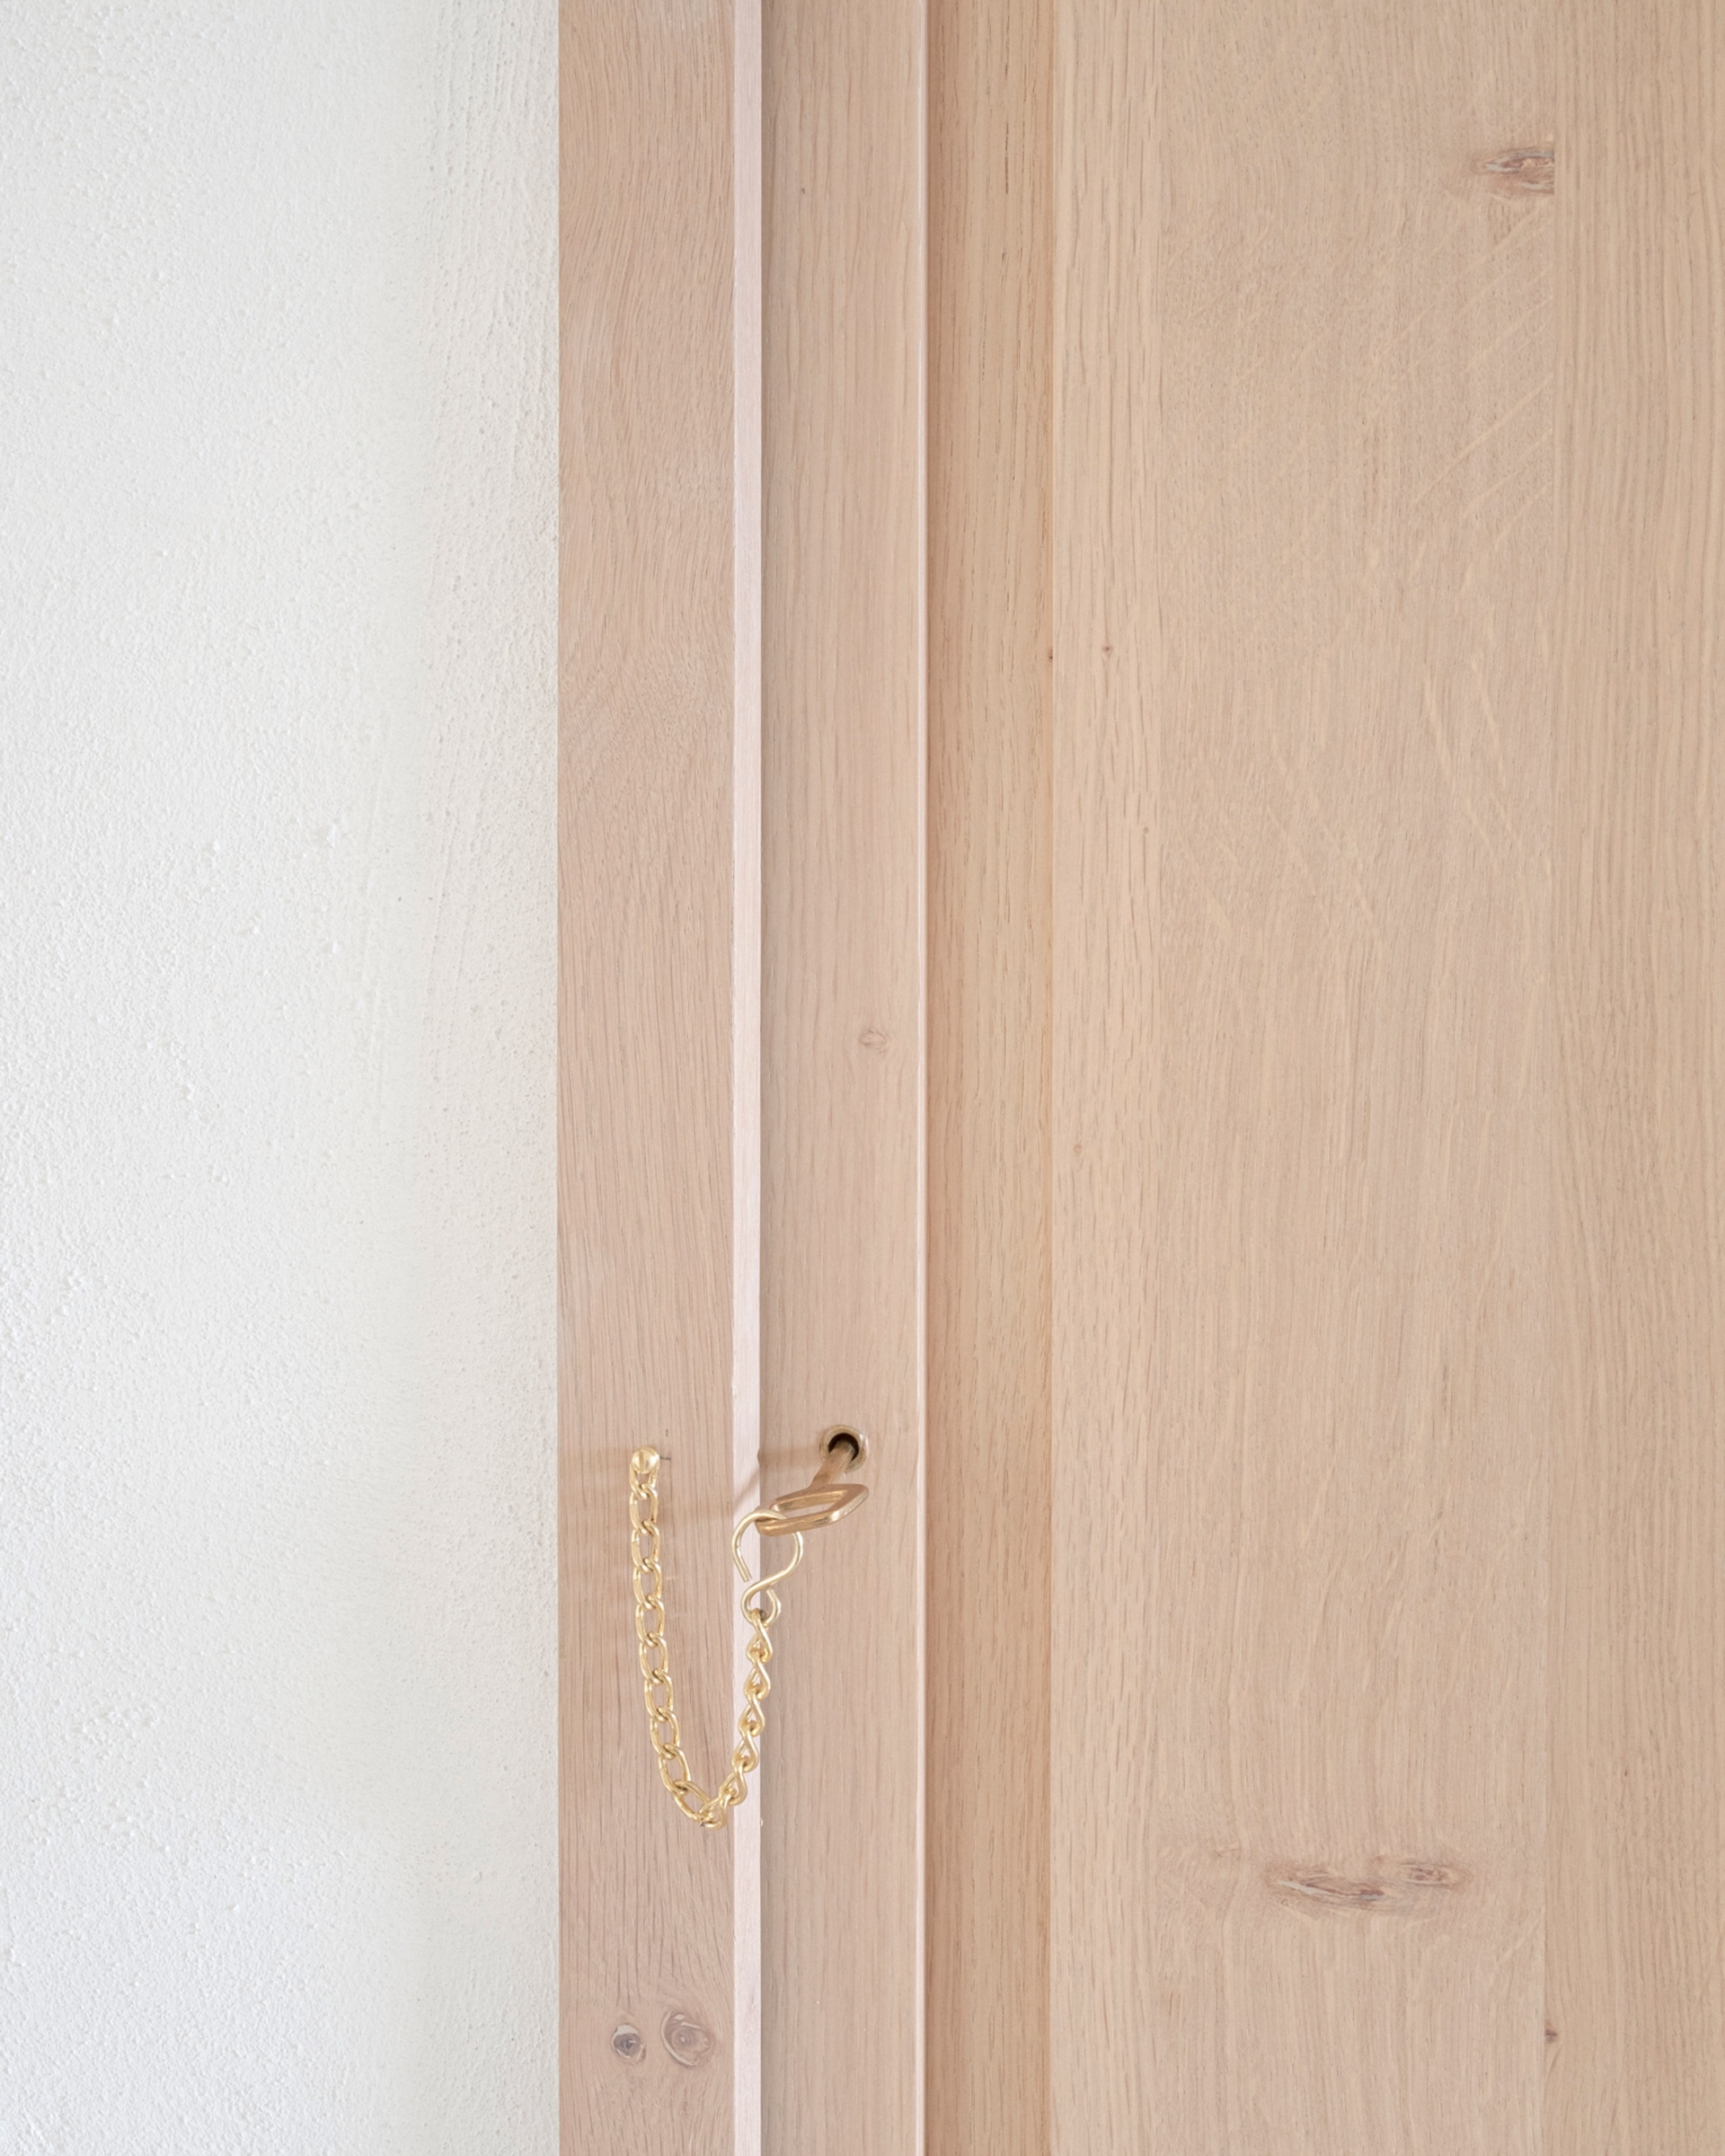 Từng chi tiết nhỏ nhất trong ngôi nhà đều được trau chuốt một cách vô cùng tinh tế. Chẳng hạn như chi tiết chìa khóa cửa kim loại mạ vàng đồng nổi bật trên phông nền là cánh cửa bằng gỗ này chẳng hạn.